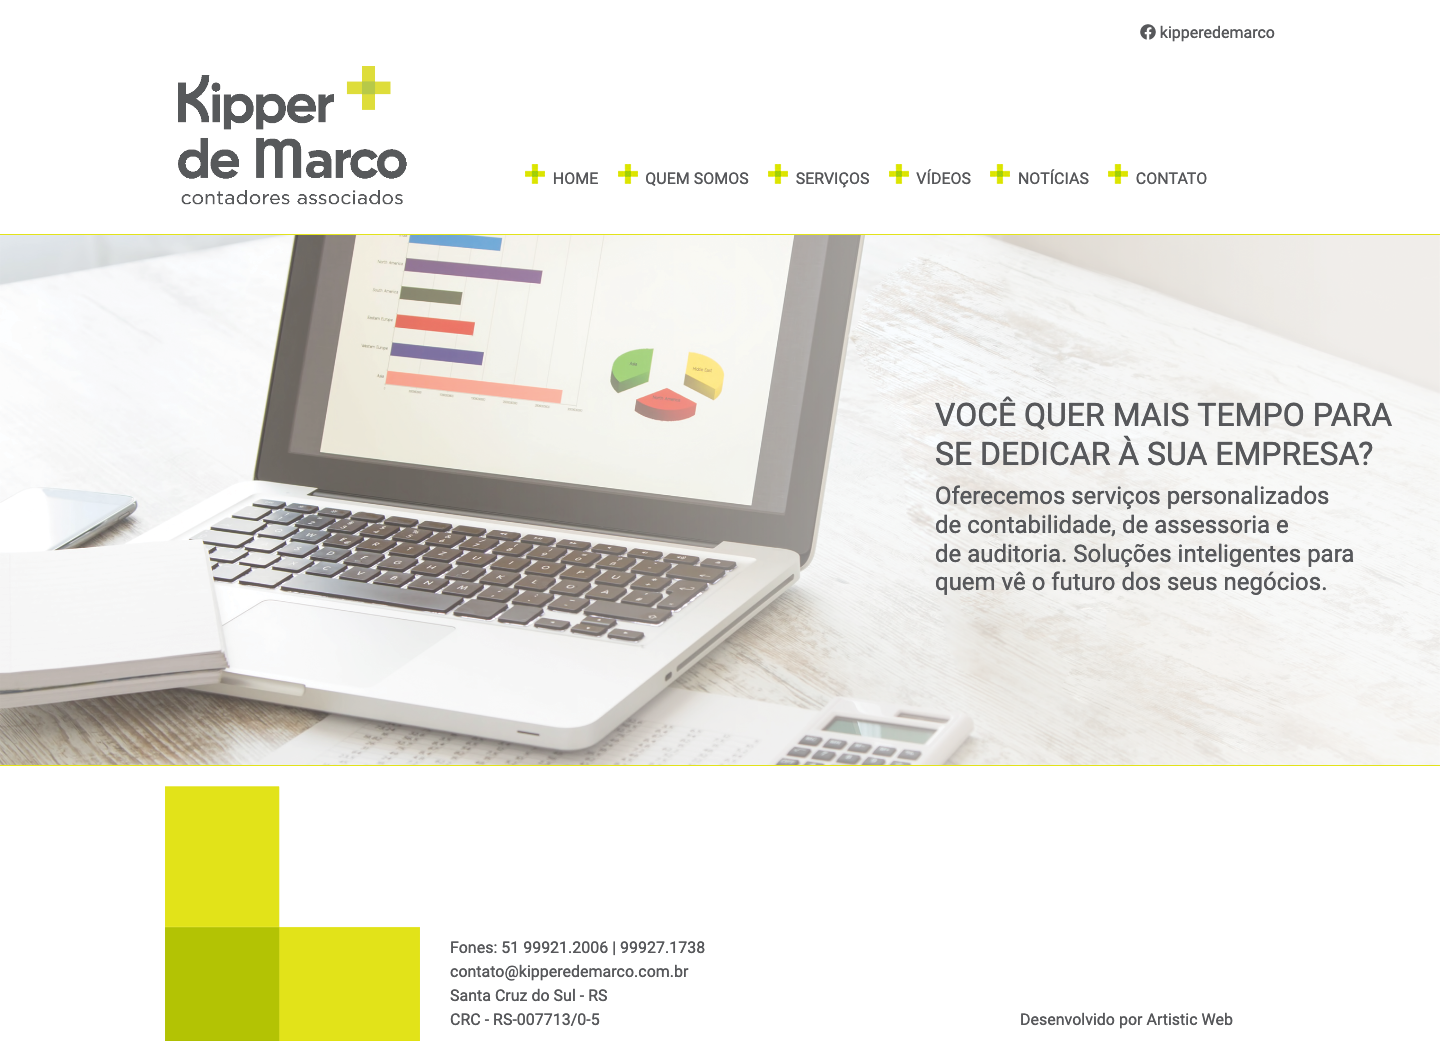 KIPPER & DE MARCO